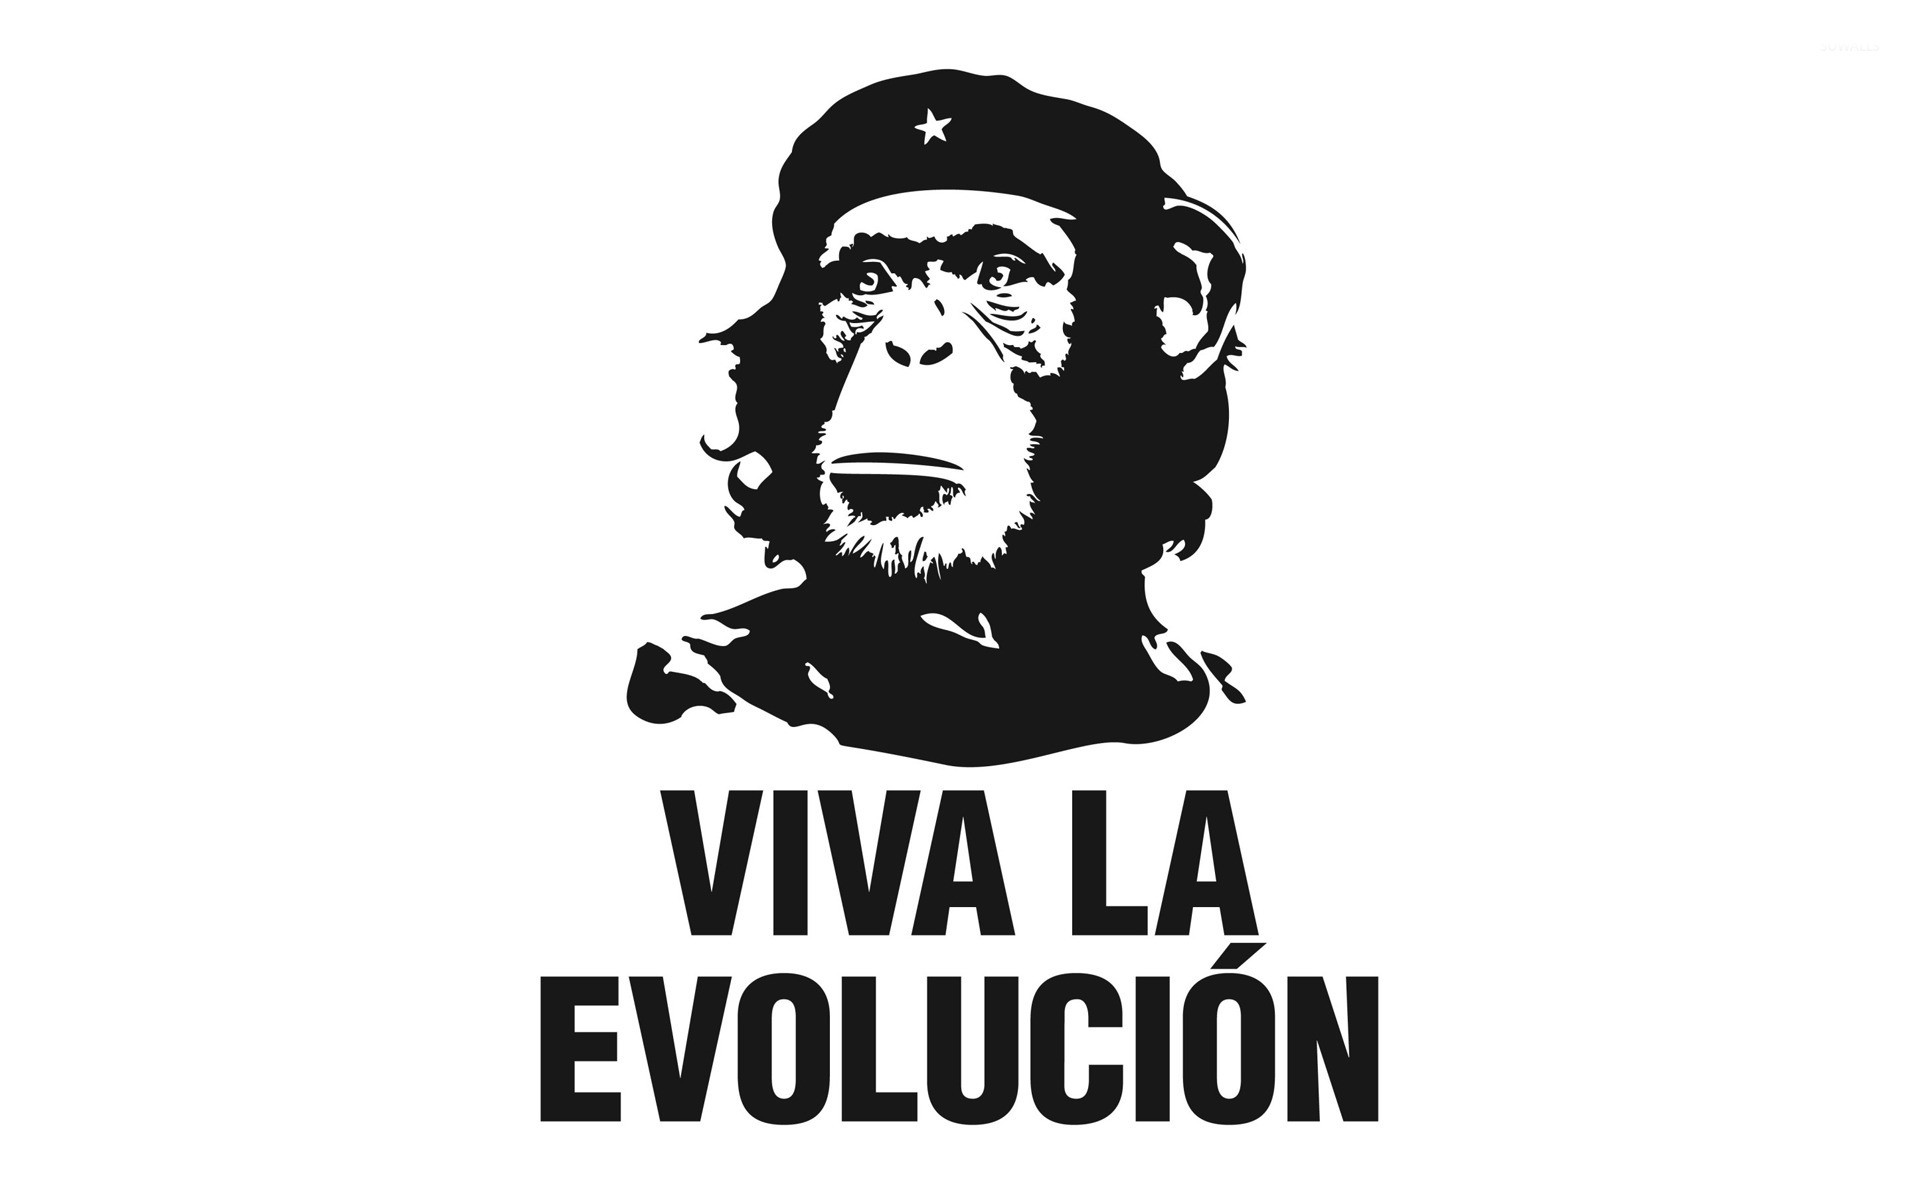 1920x1200 Viva la evolucion wallpaper  jpg